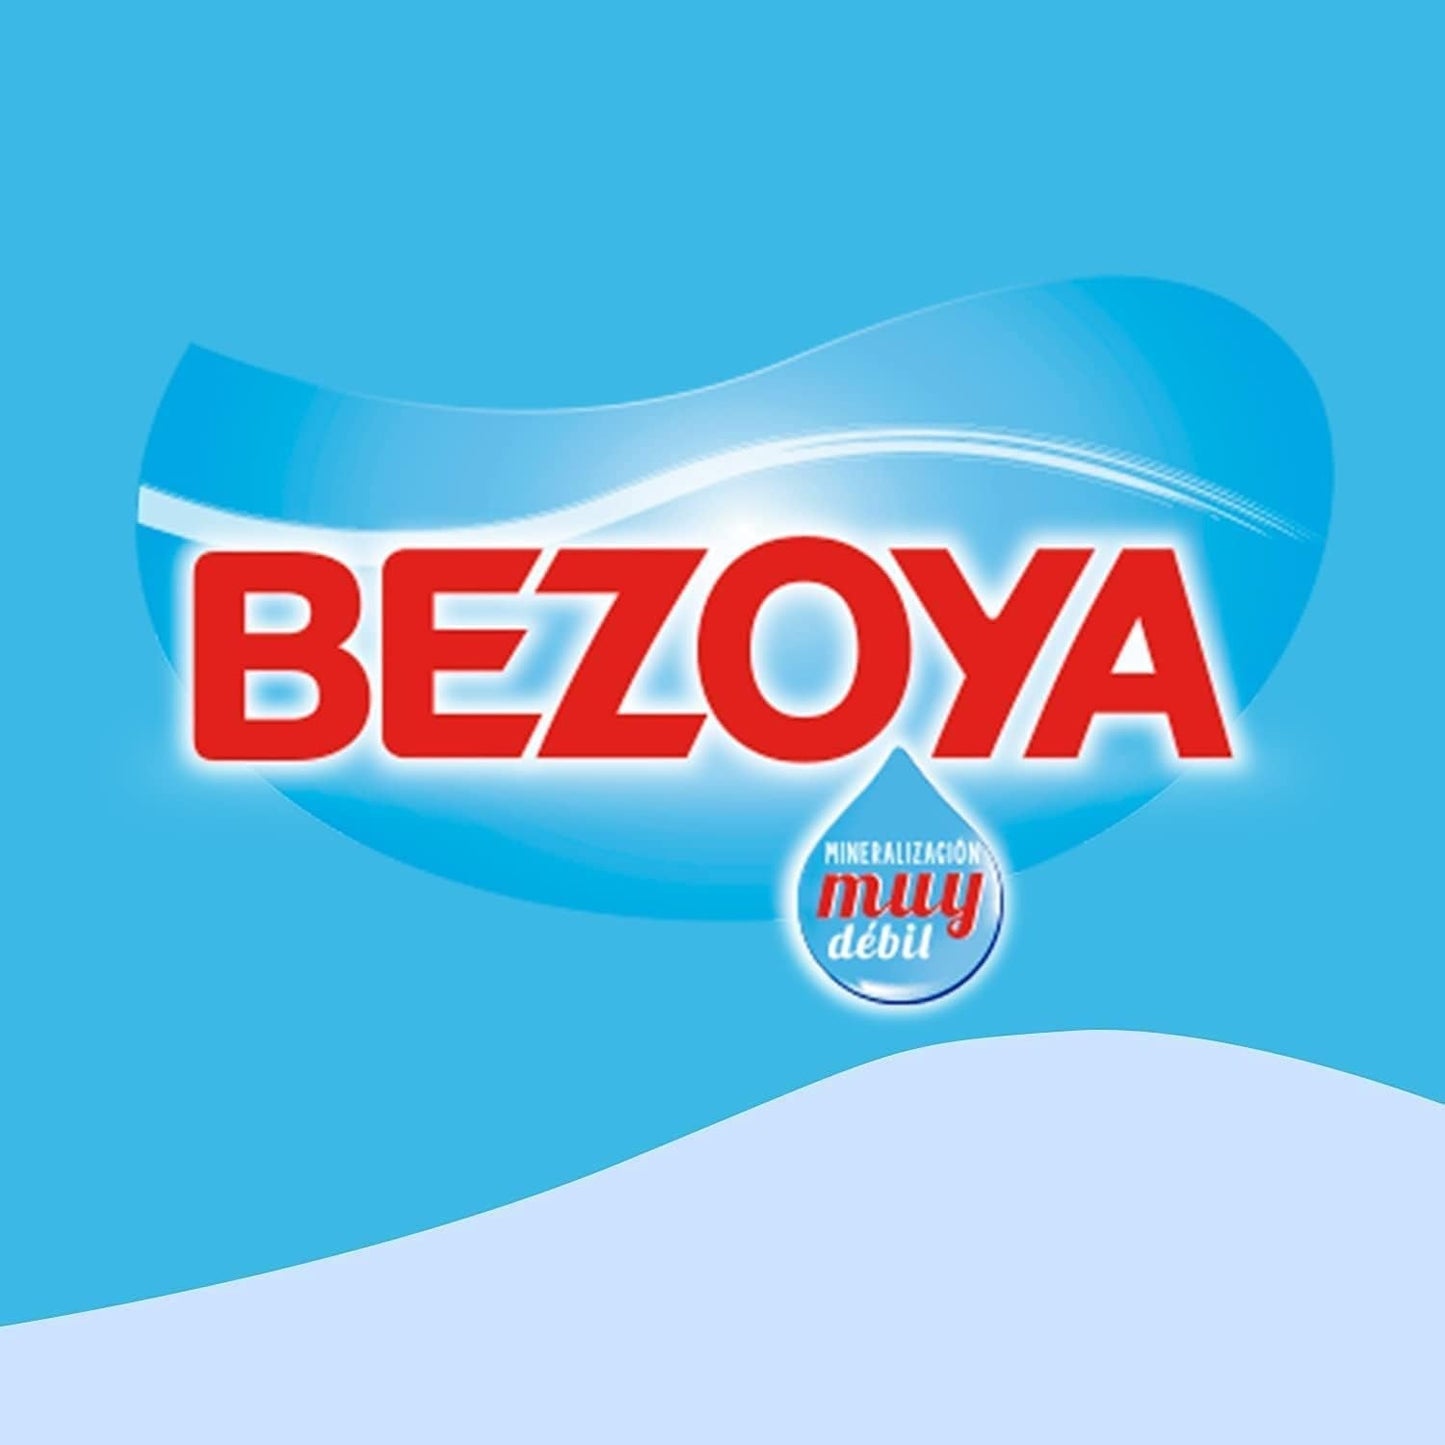 Bezoya Agua - 24 botellas x 50 cl - Total: 1200 cl